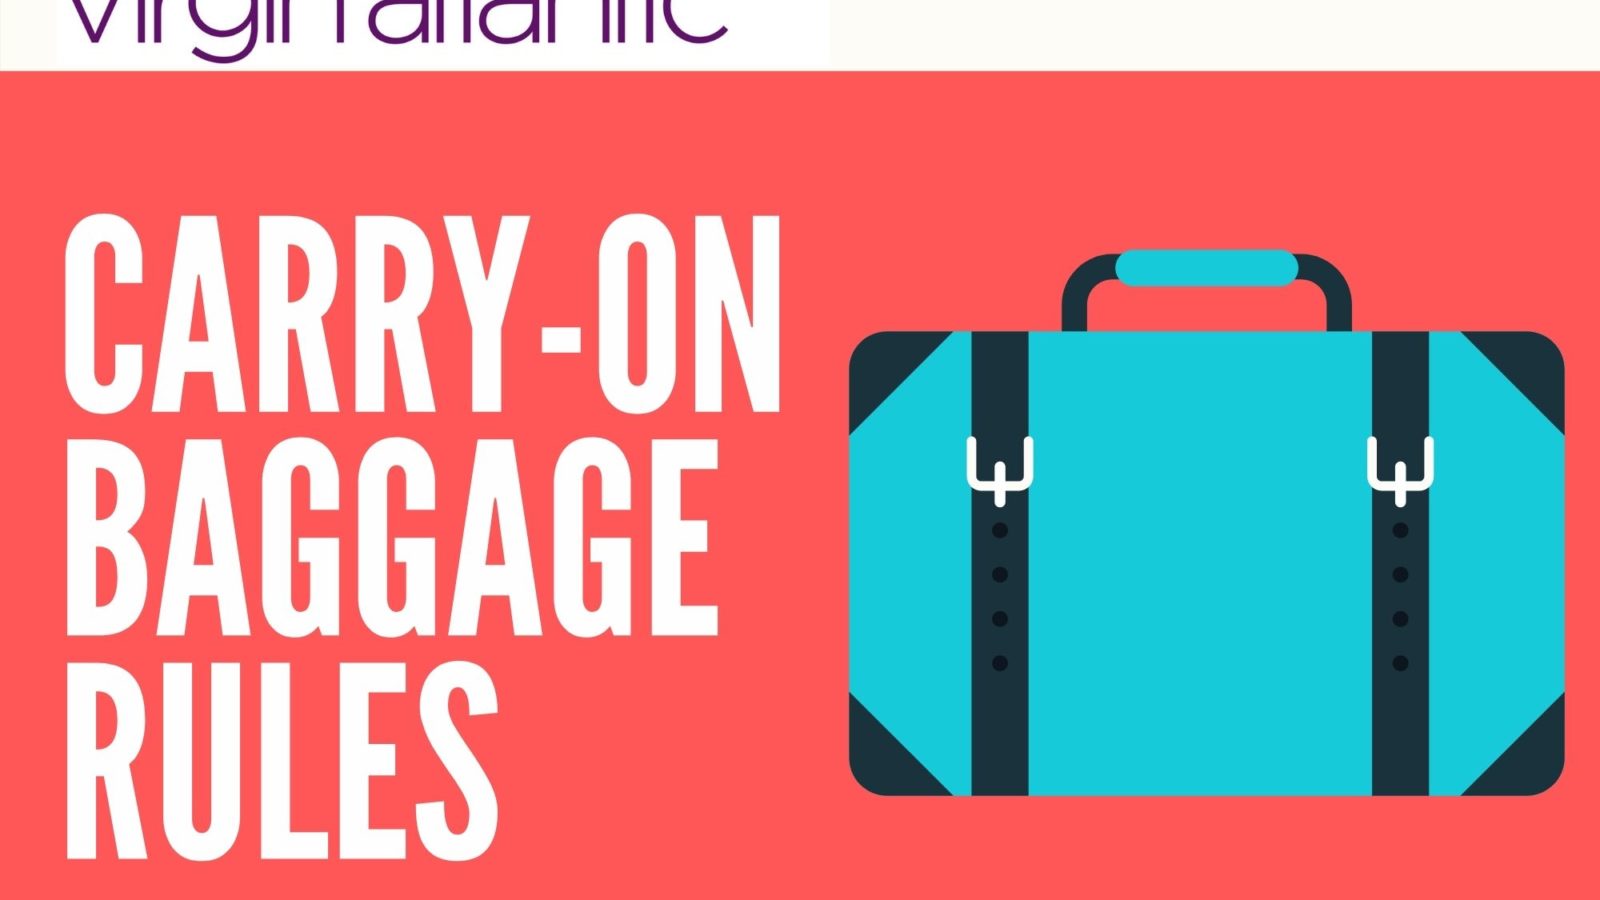 atlantic city airport baggage fees